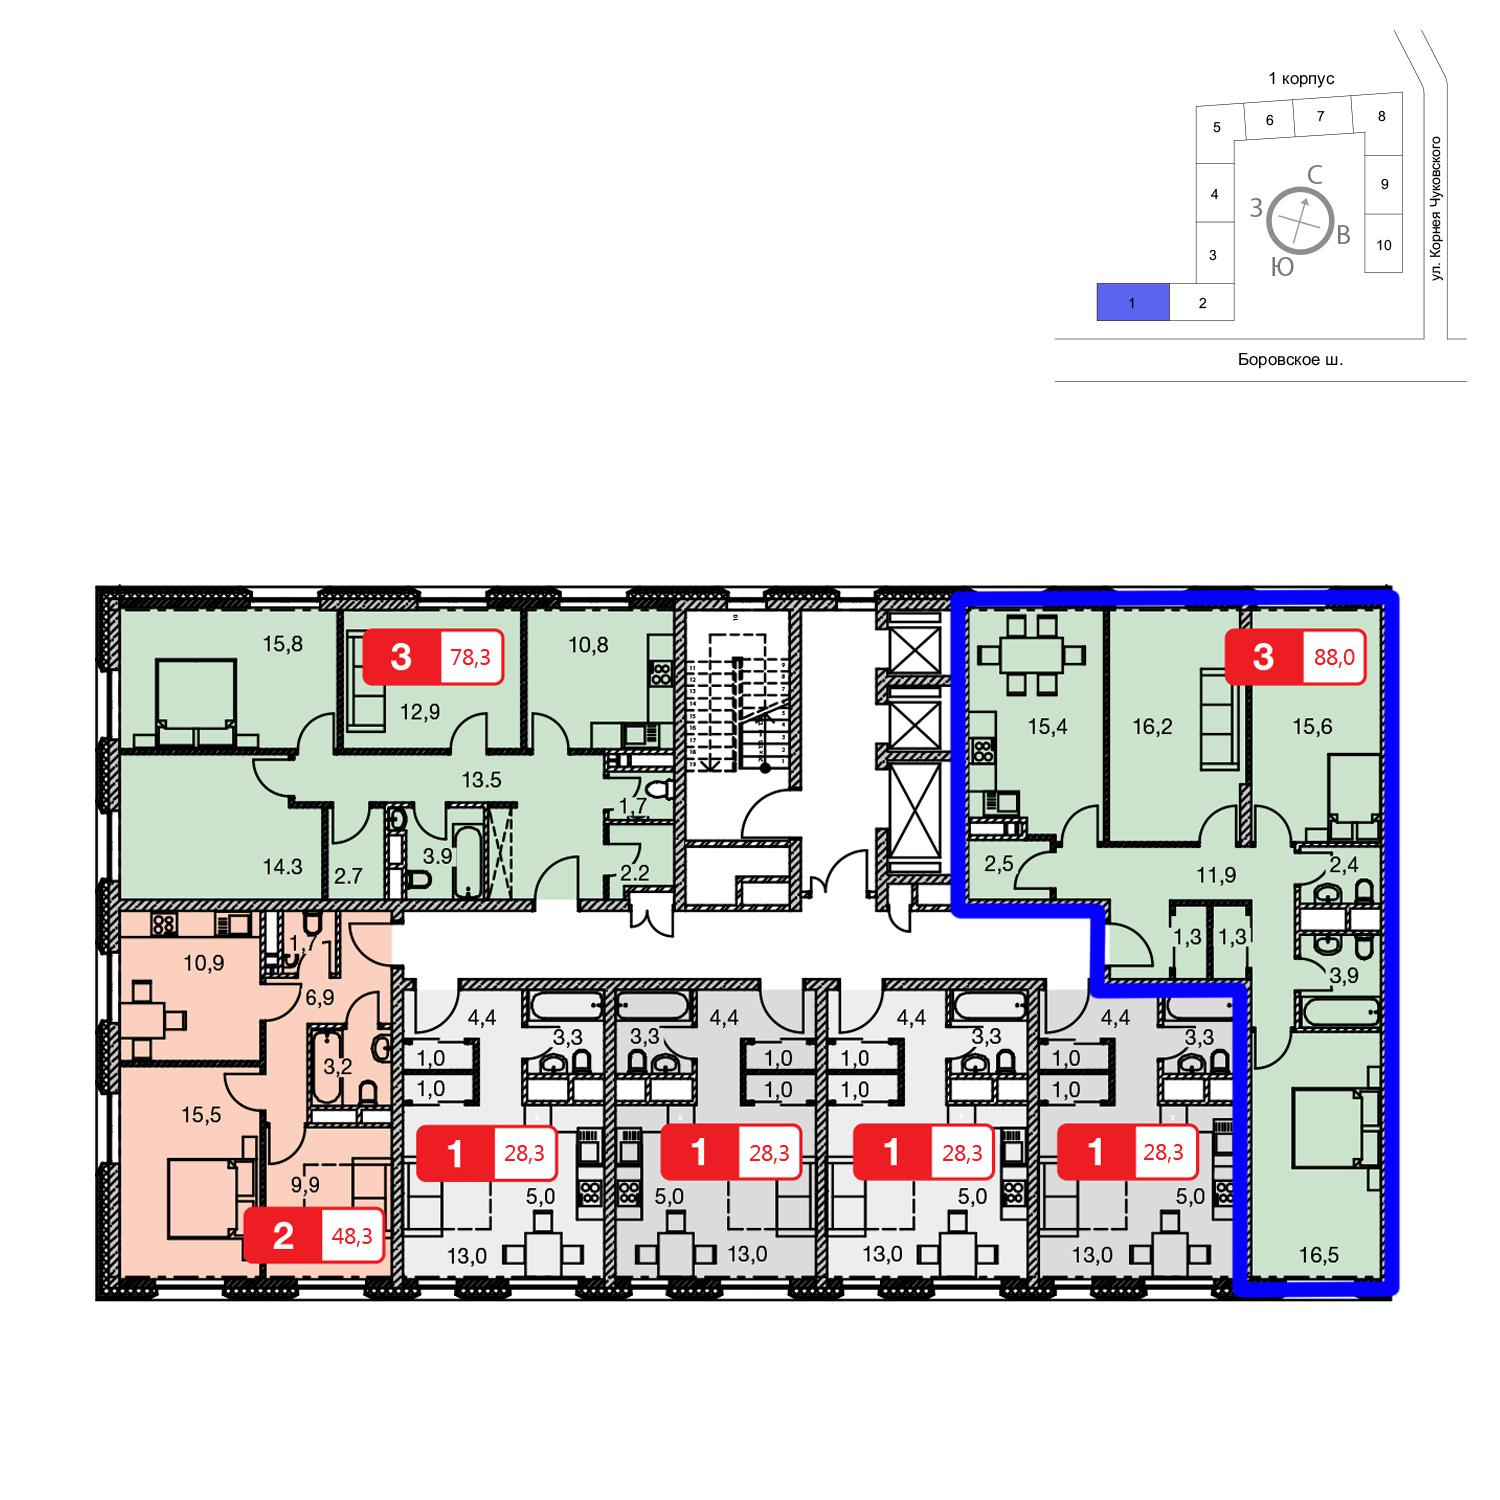 Продаётся 3-комнатная квартира в новостройке 88.0 кв.м. этаж 22/23 за 0 руб 